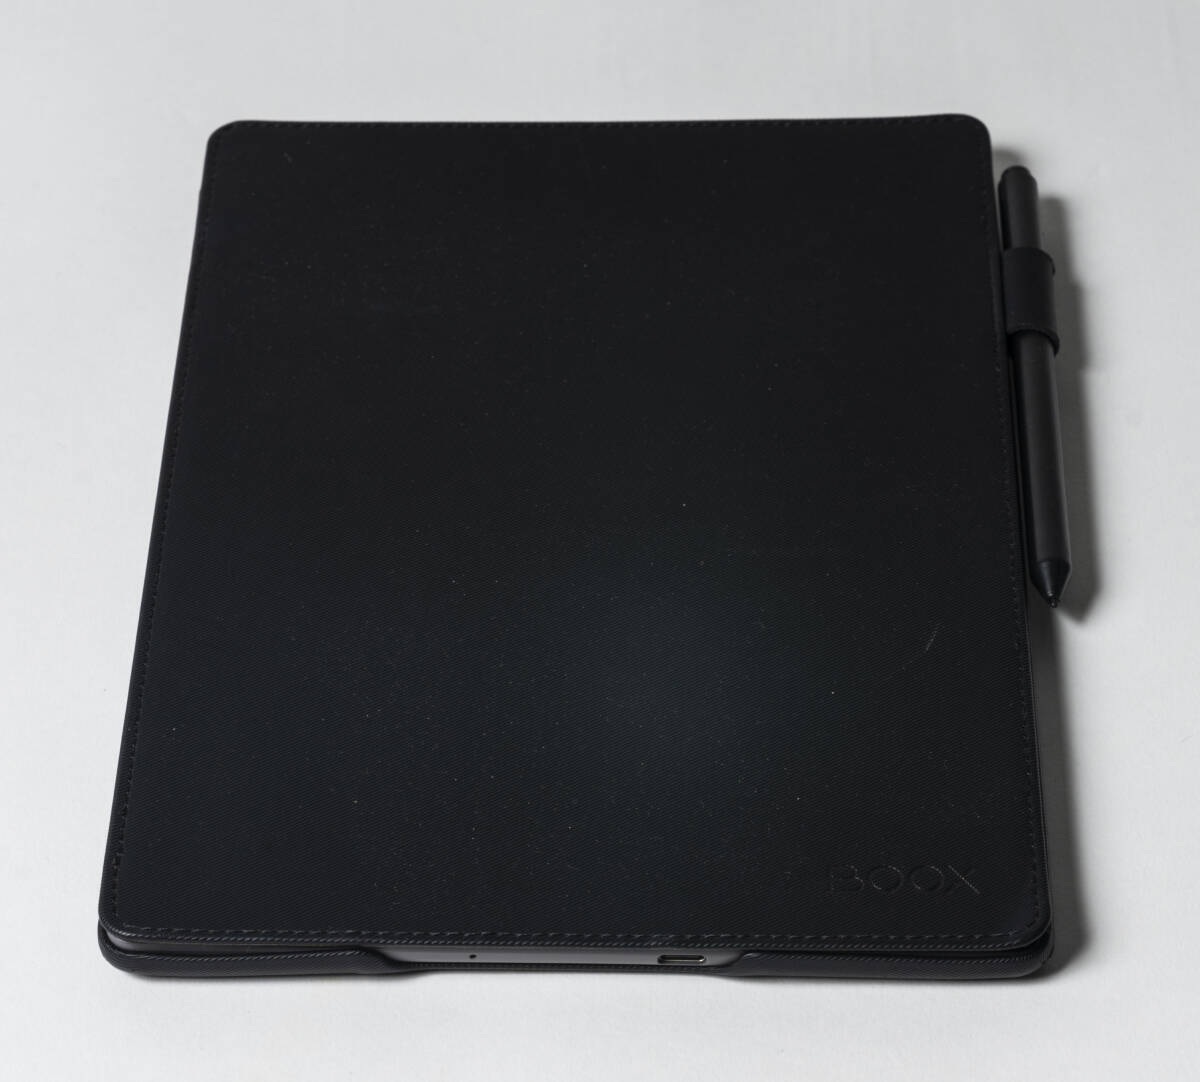 Boox Note Pro 10.3 -inch Eink E-reader 